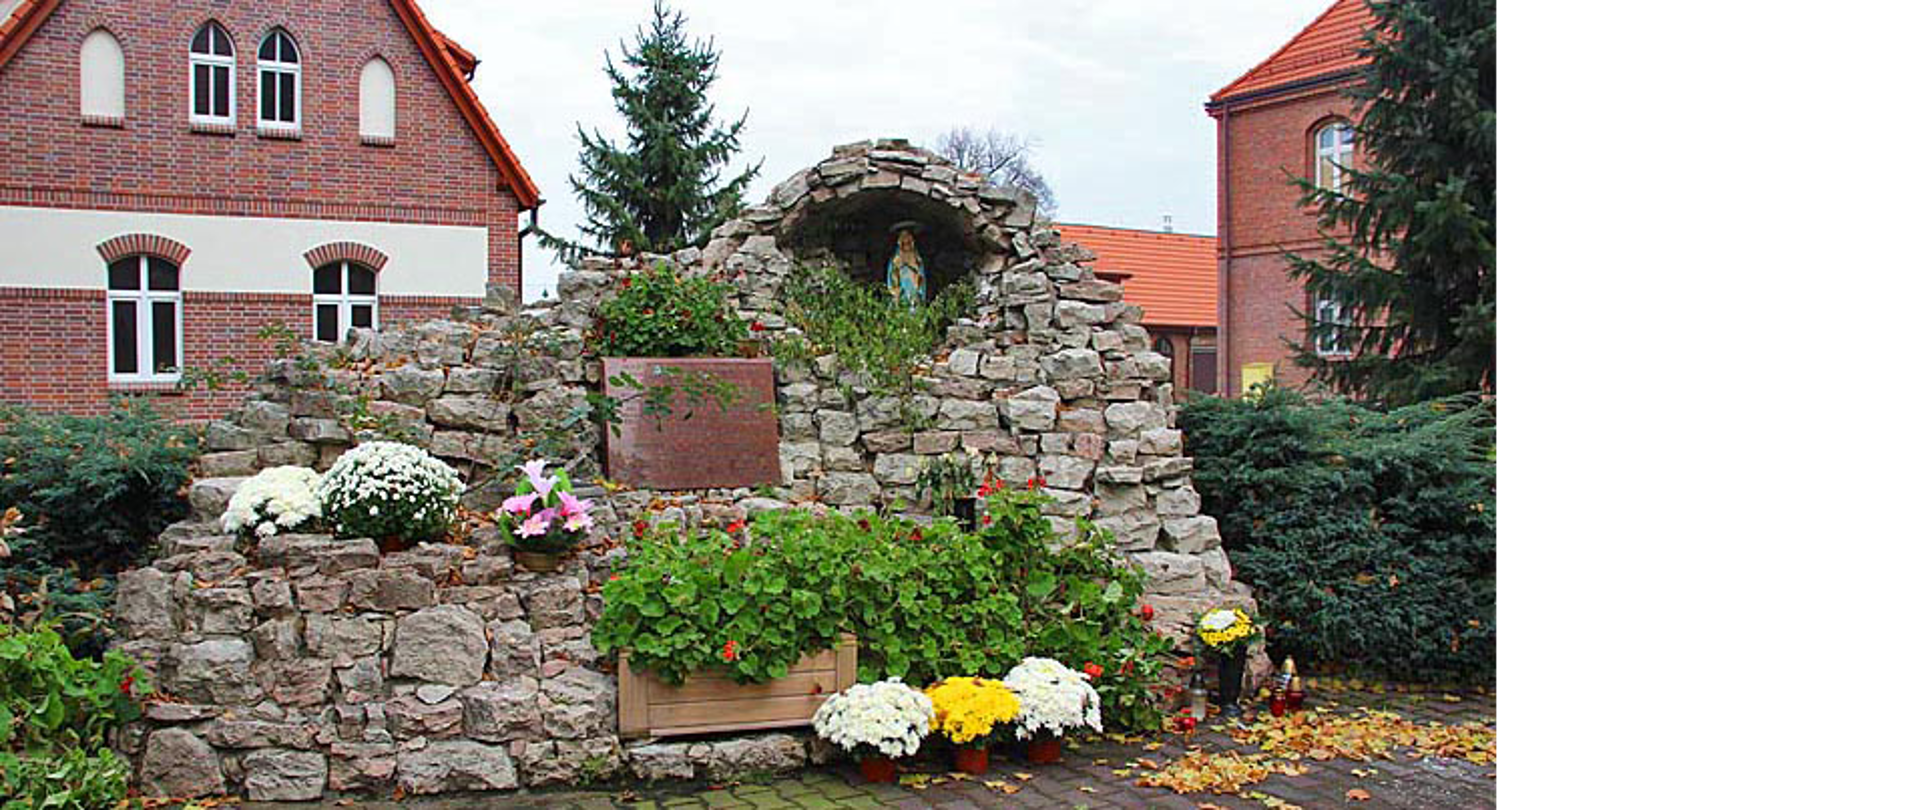 Grota Matki Boskiej z Lourdes utworzona z kamieni, wśród kamieni znajdują się kwiaty oraz tablica informacyjna. W grocie stoi figura Matki Boskiej. W tle widać dom parafialny i budynek probostwa z czerwonej cegły.